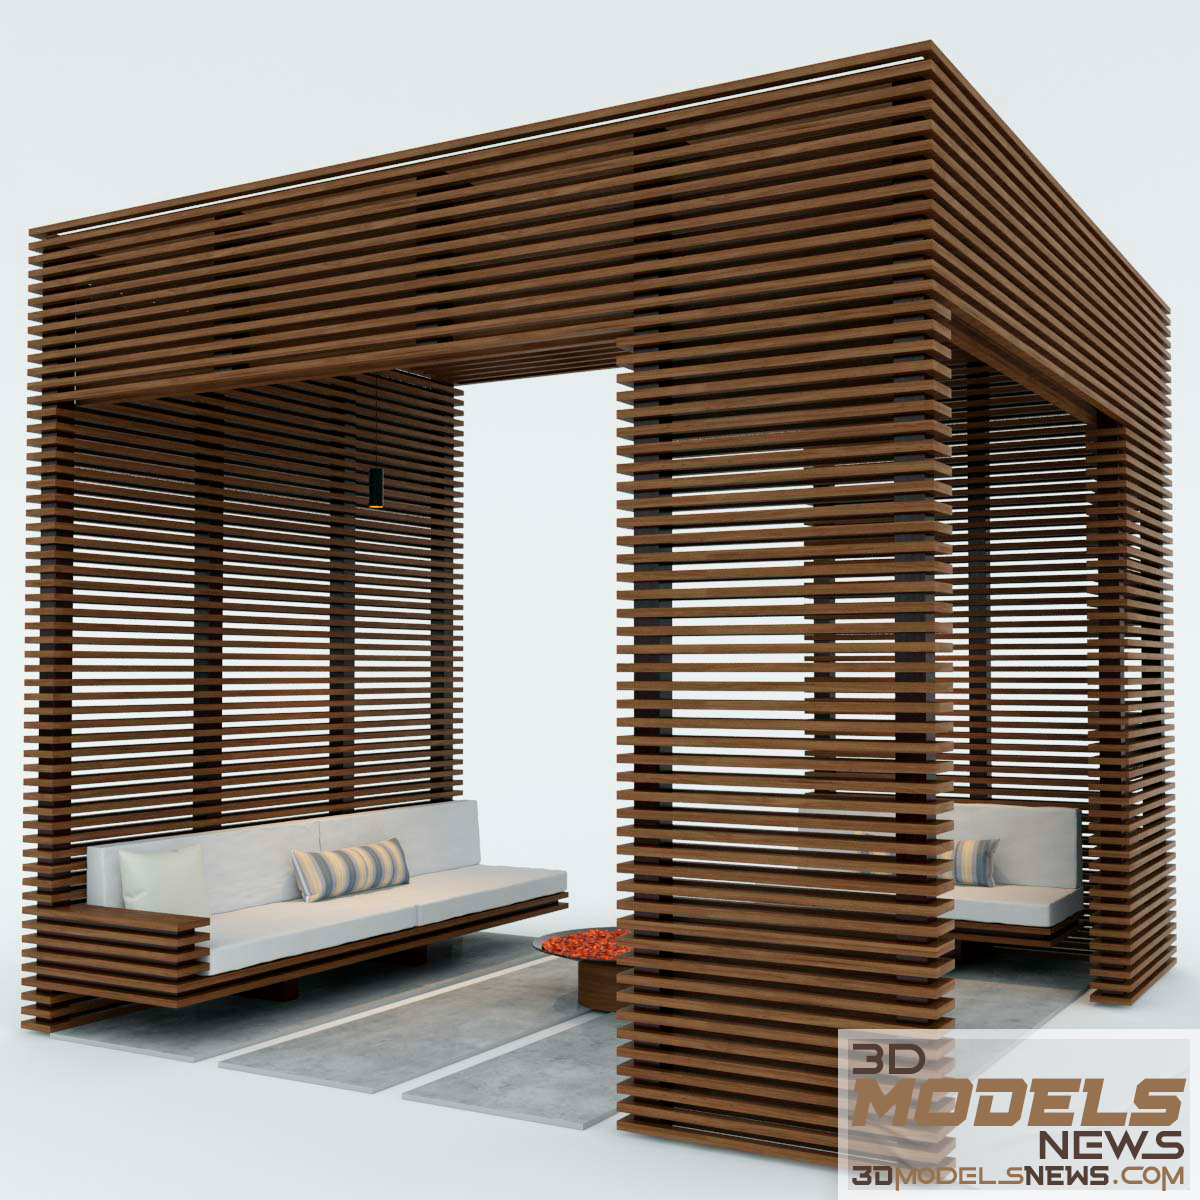 Exterior wooden pergola model